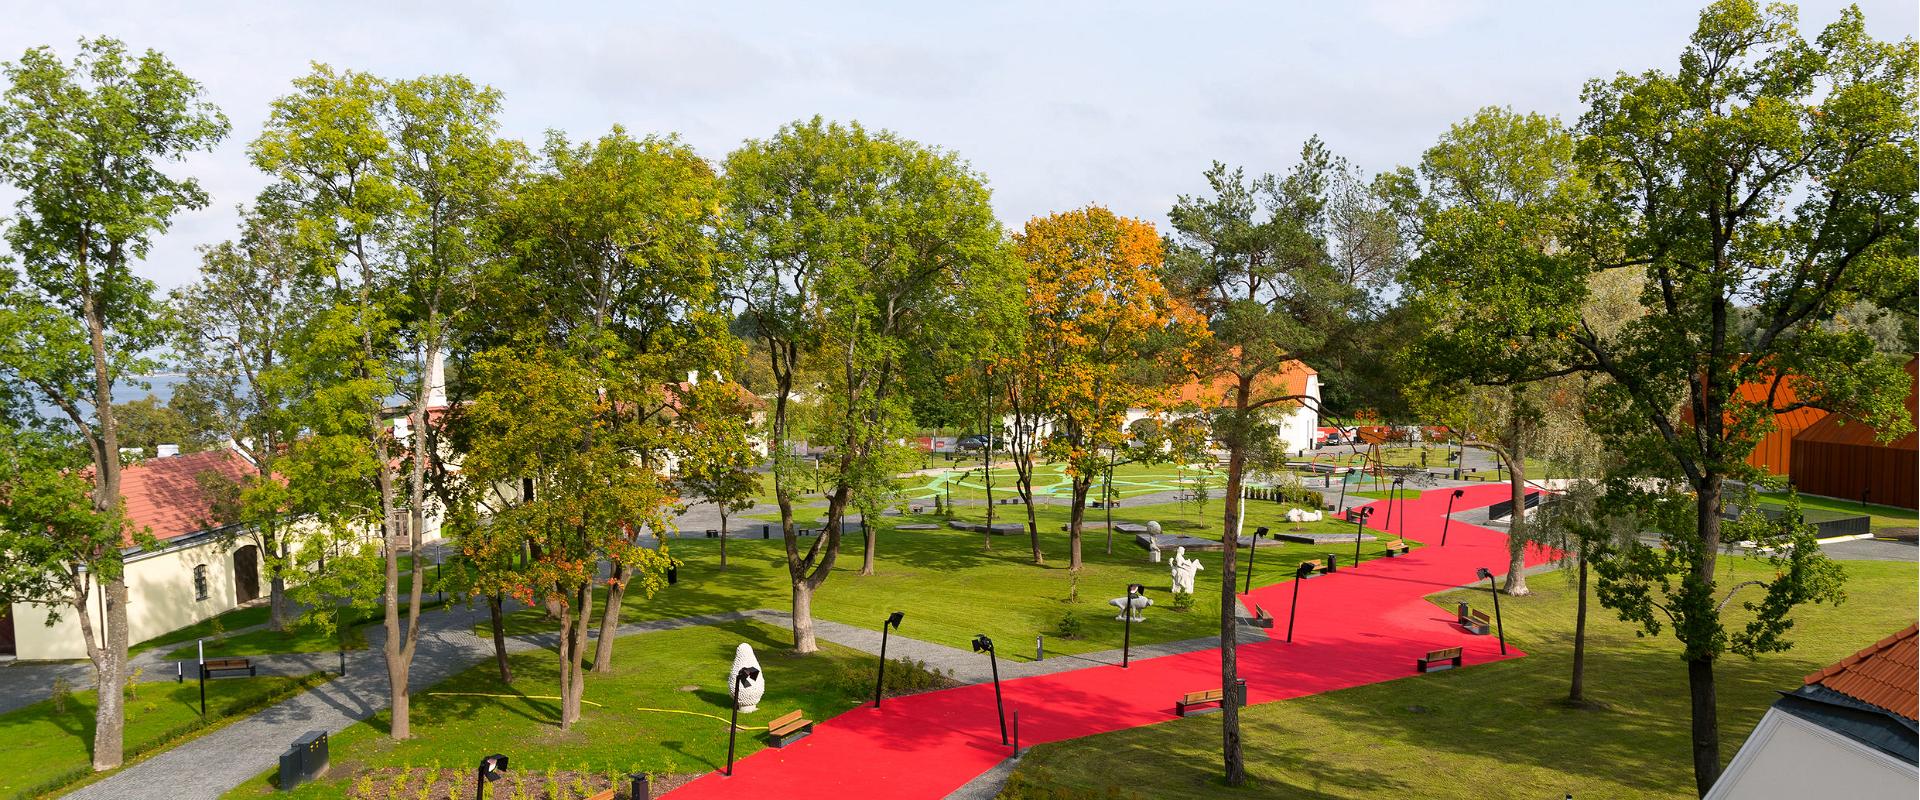 Viron historiallisen museon Maarjamäen linna